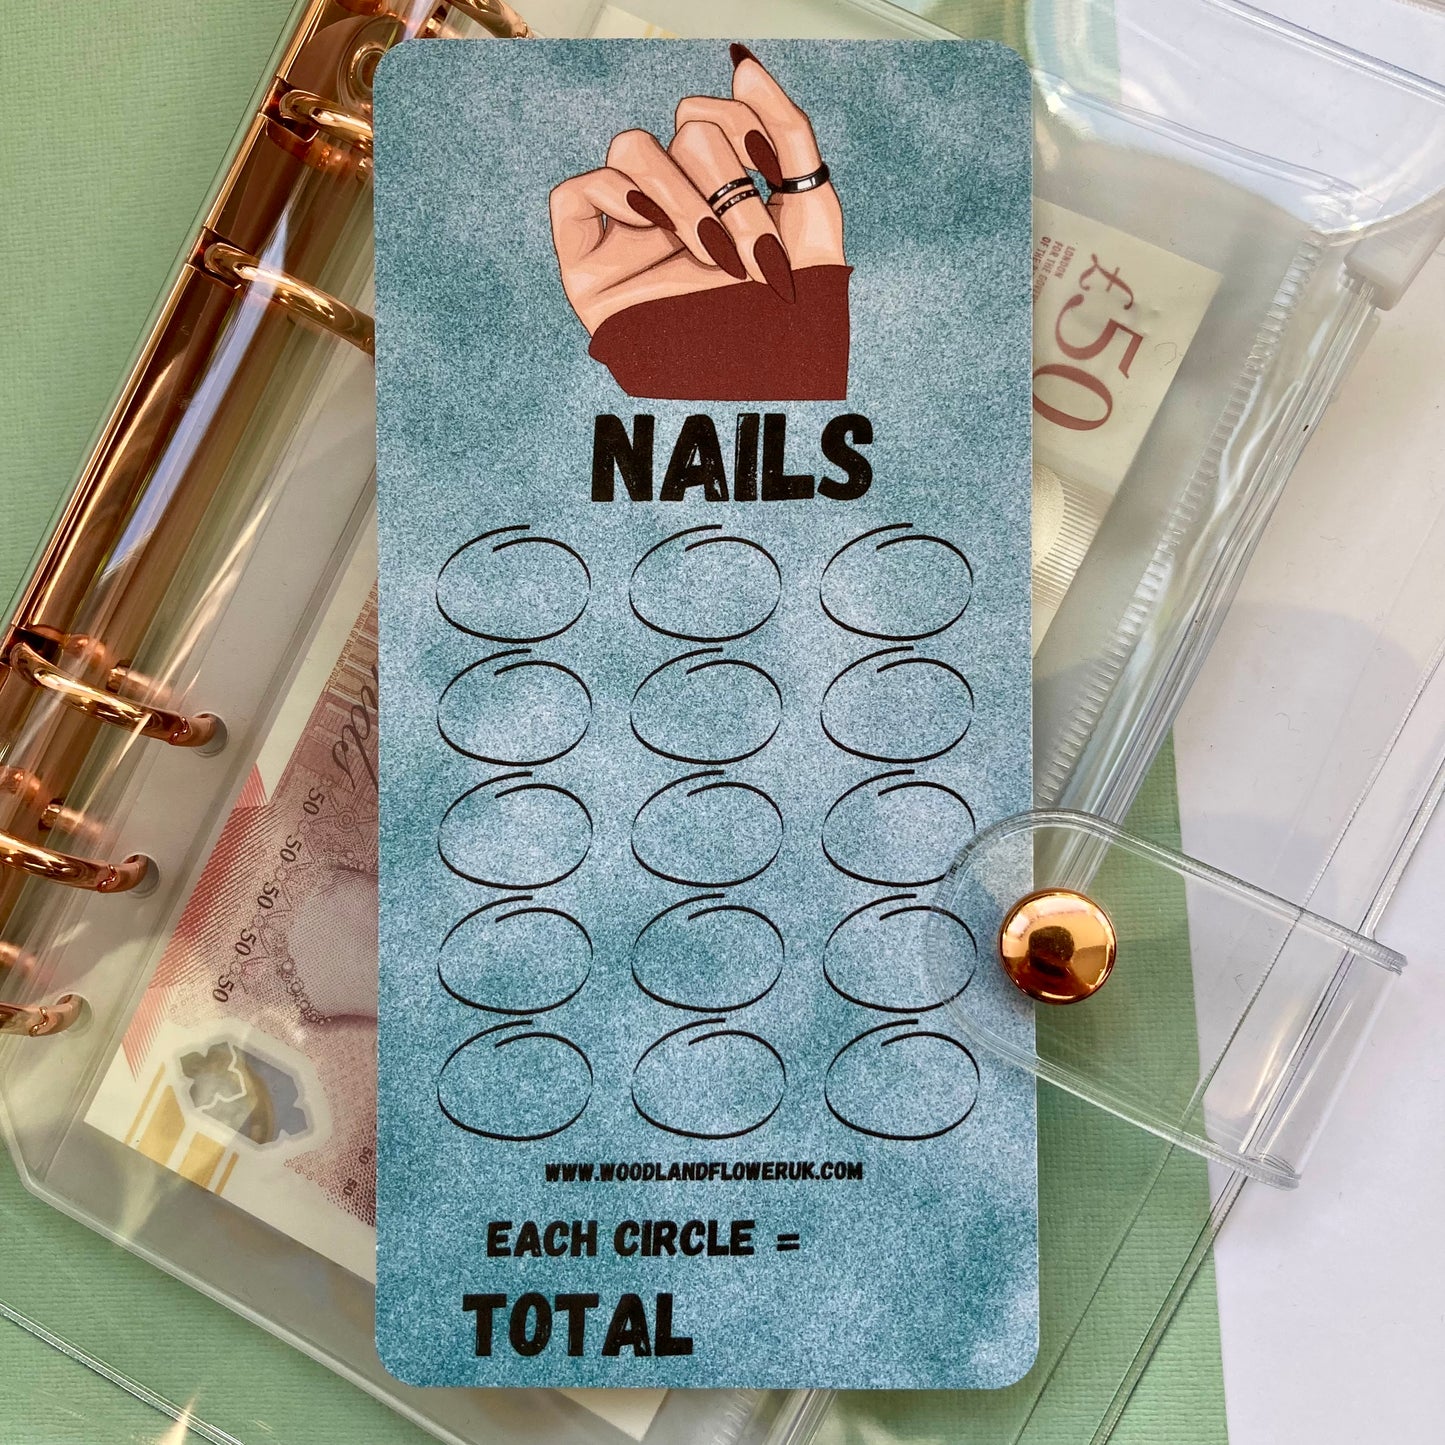 Saving challenge “nails”